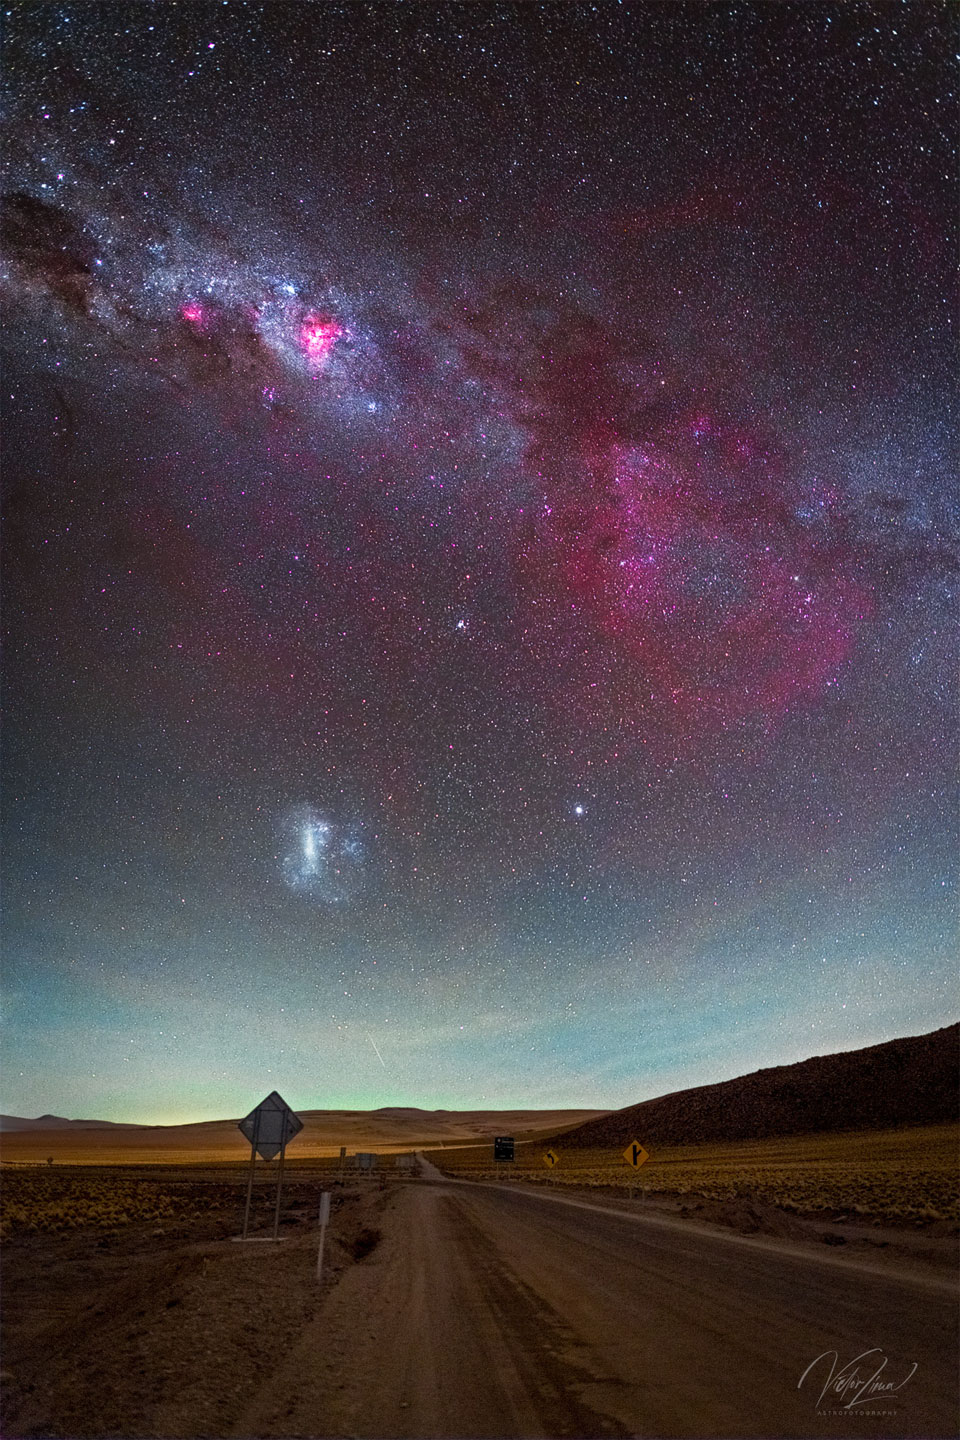 这张特色图片展示了一个宏伟的天空景观，前景是一条棕色的沙漠道路，天空包含了银河系的星系带，在右侧有一个大的红色辉光，这是昏暗的甘姆星云。LMC星系也可见。有关更多详细信息，请参阅说明。